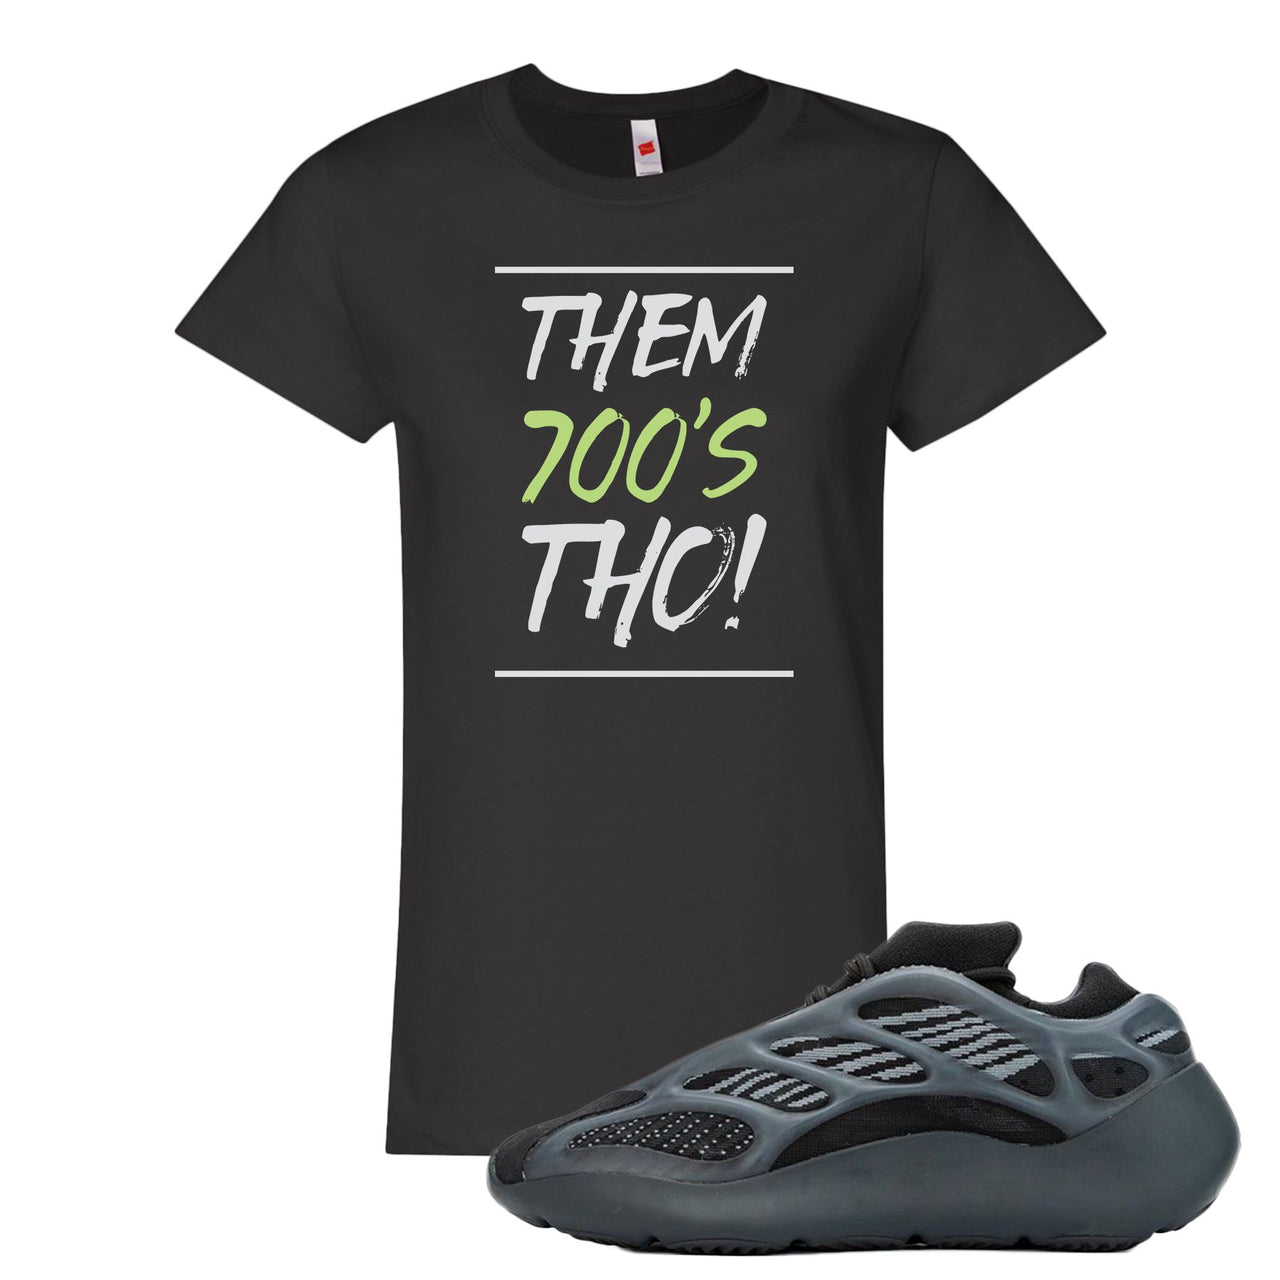 Alvah v3 700s Women's T Shirt | Women's Them 700's Tho!, Black